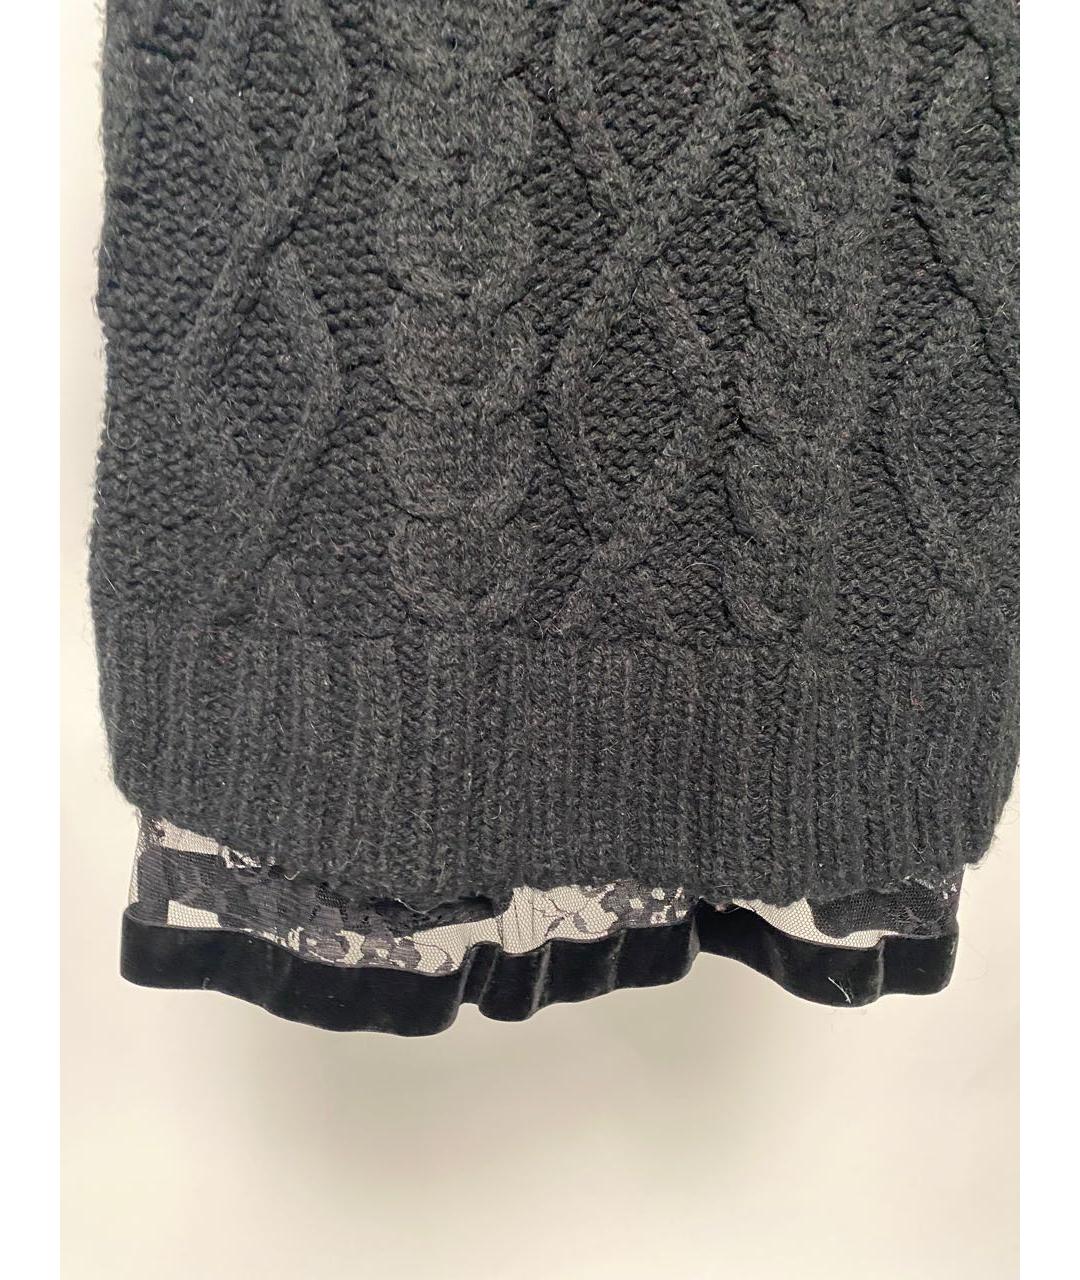 TWIN-SET Черный шерстяной джемпер / свитер, фото 4